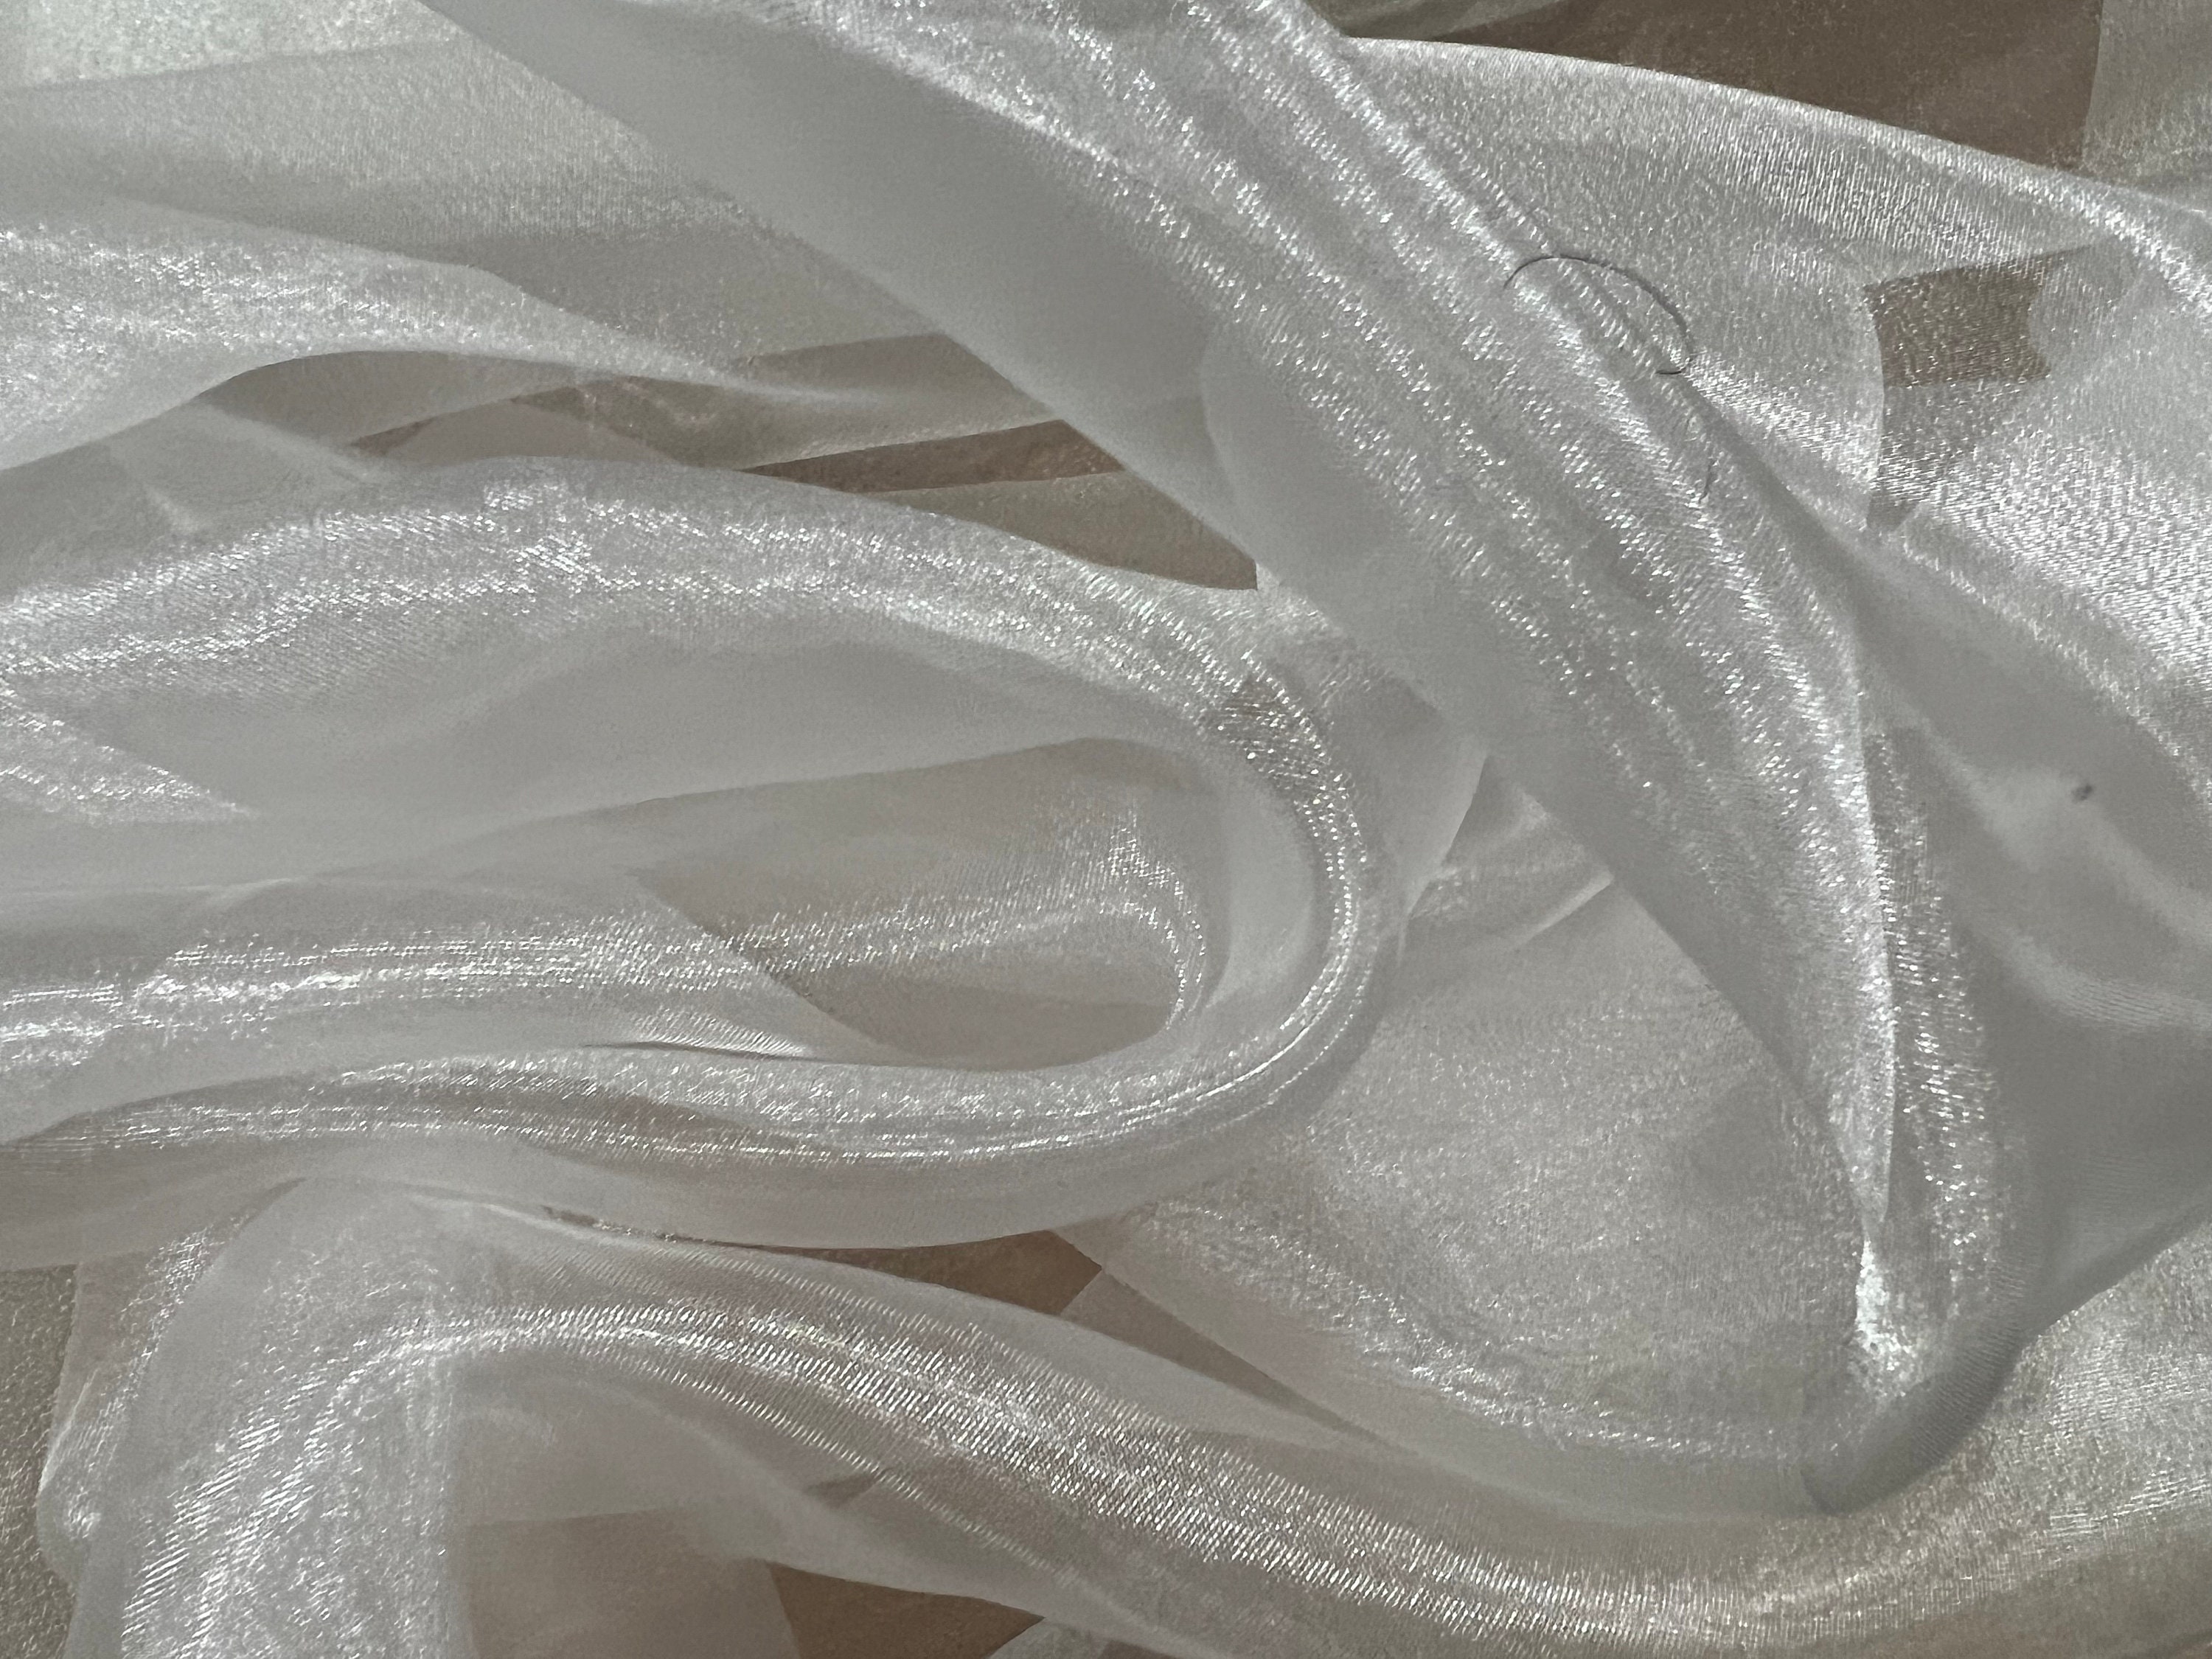 Singer Sheer Pressing Cloth, 100% Silk Organza - The Batty Lady